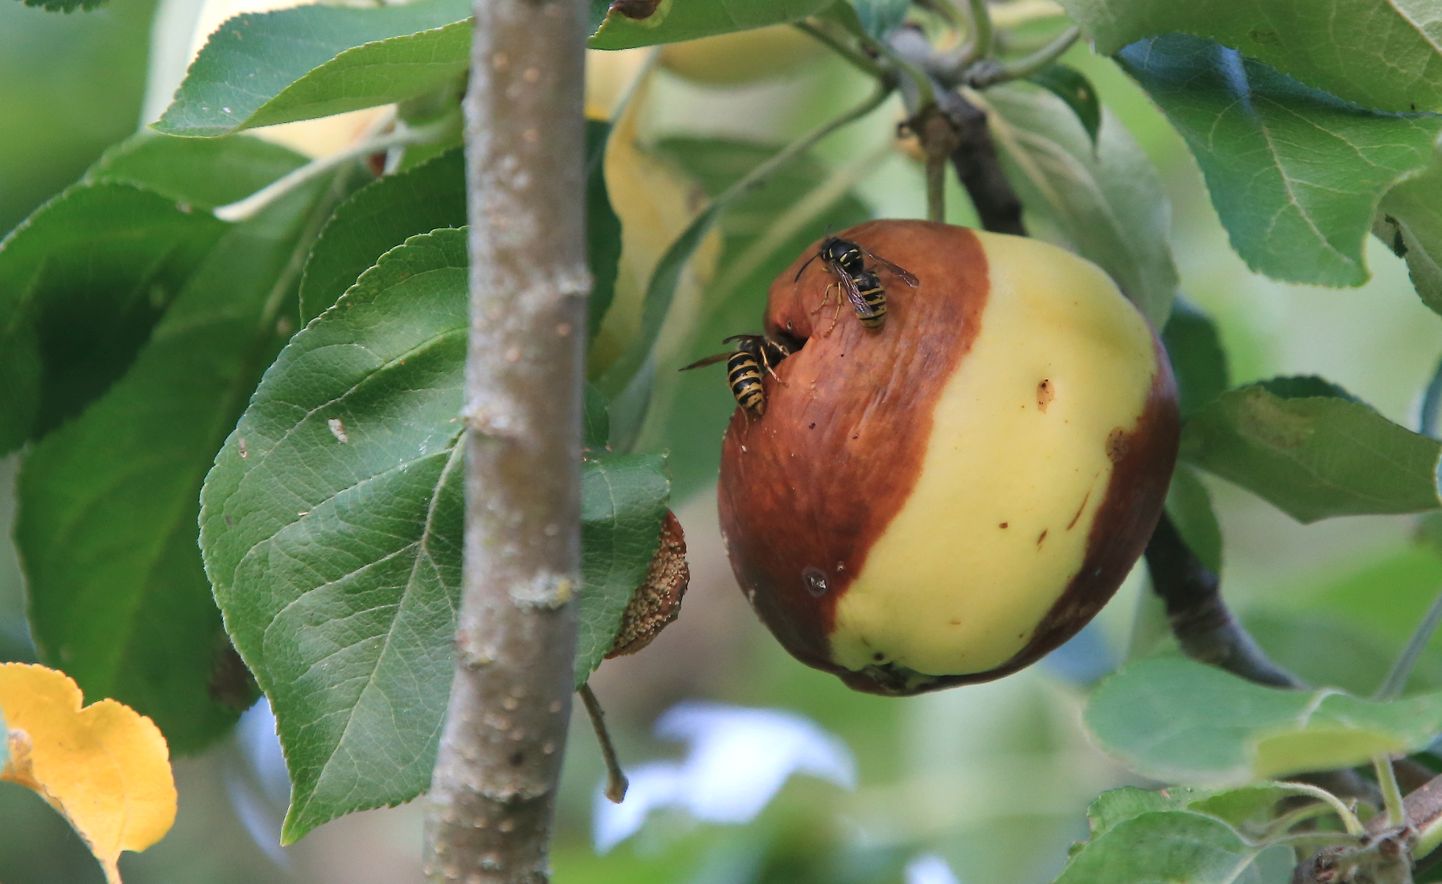 Mädanenud õunad kannavad haiguseid ja need tasub kompostimise asemel kaevata maasse.